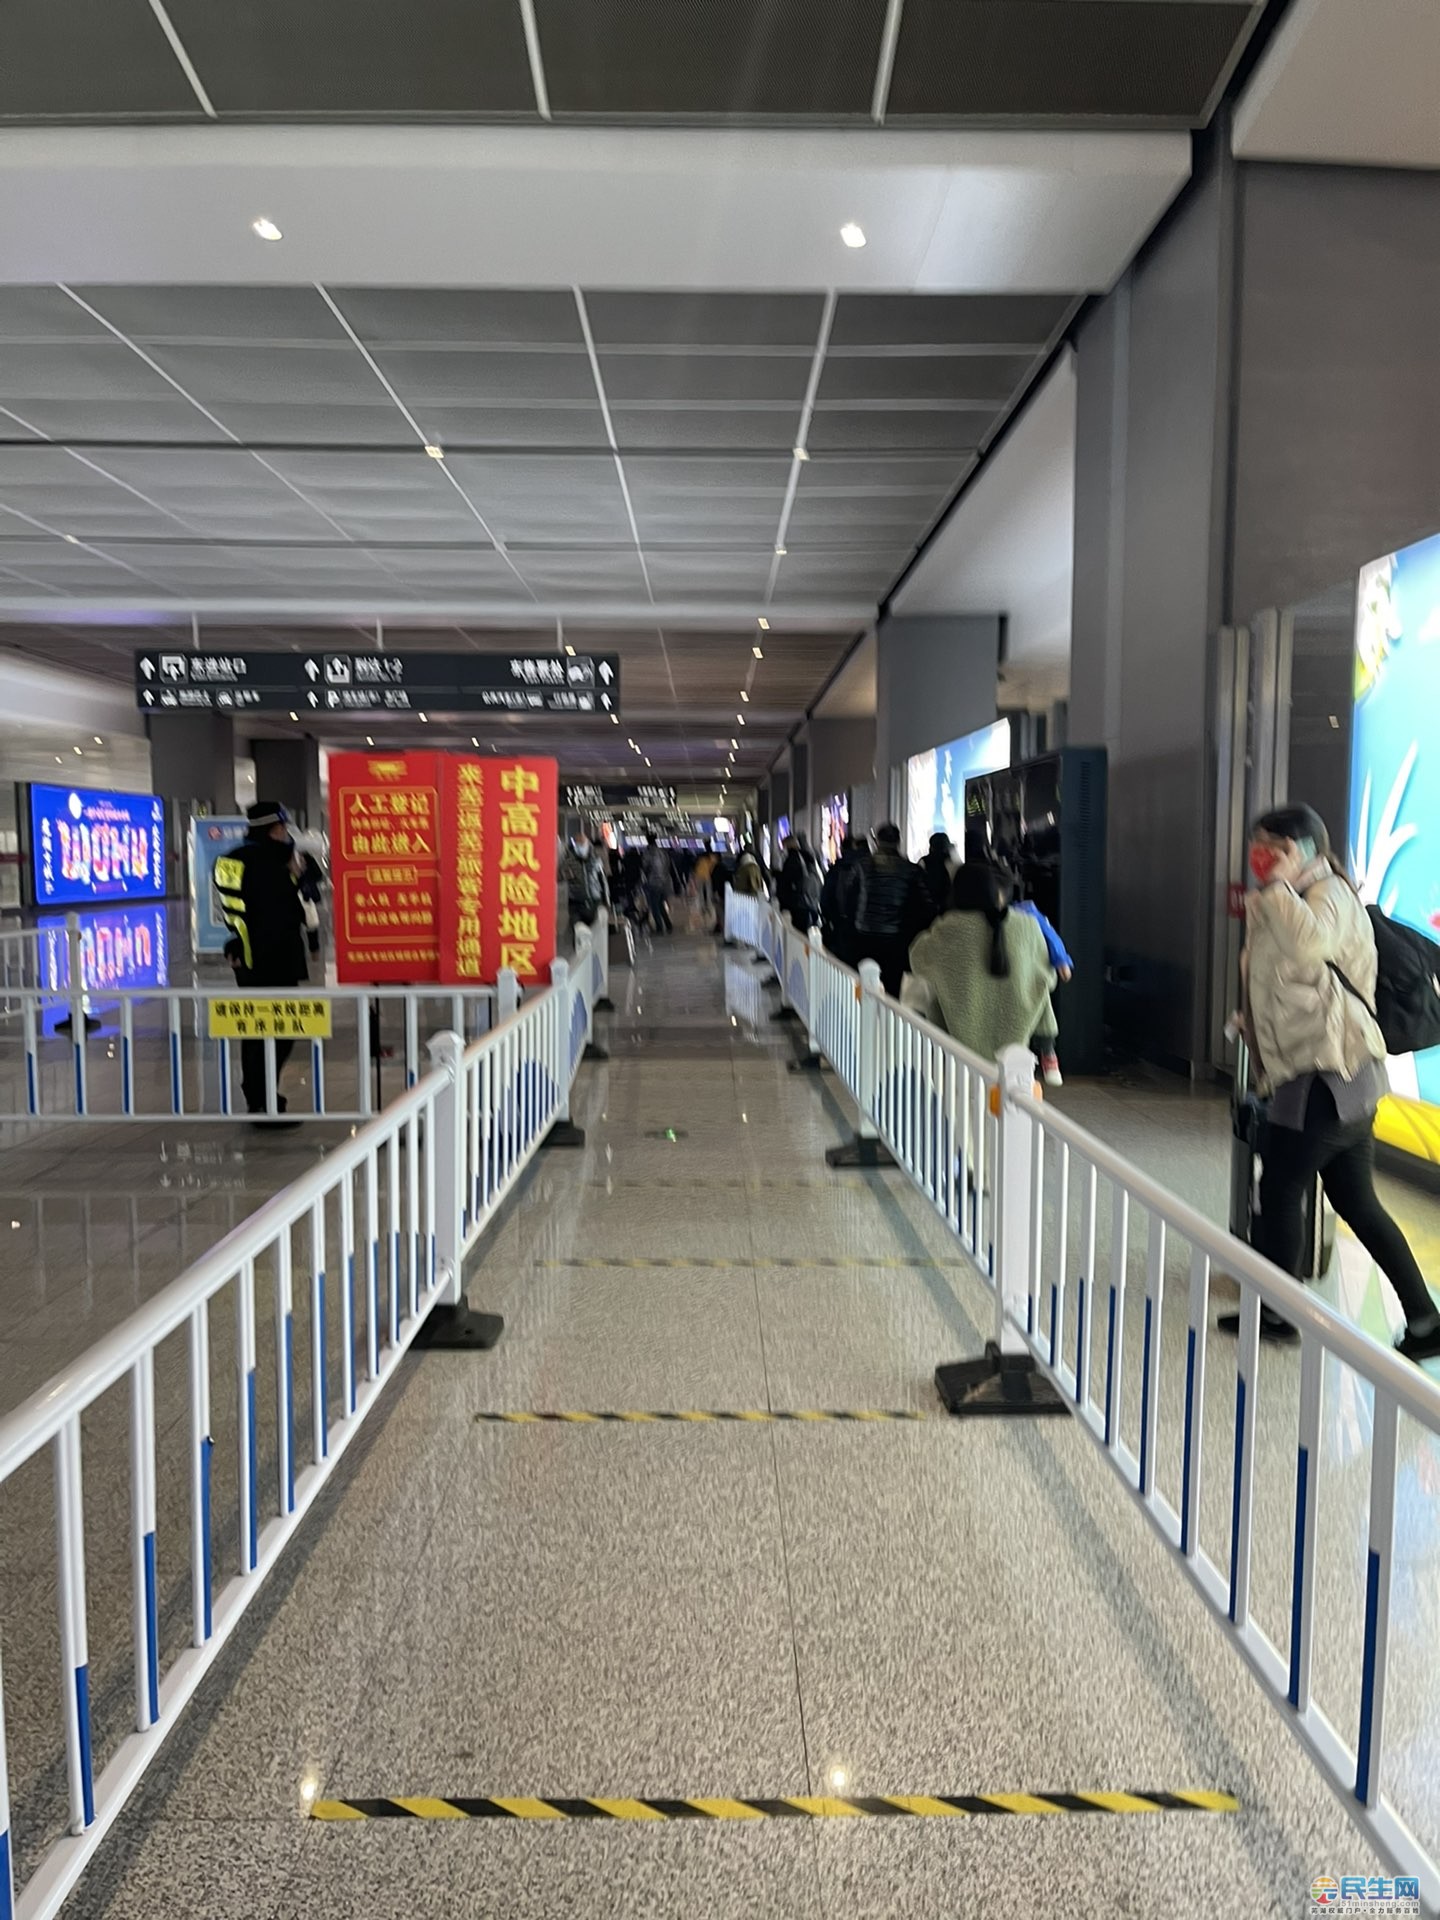 轨道交通2号线芜湖火车站地下站实拍期待12月底开通